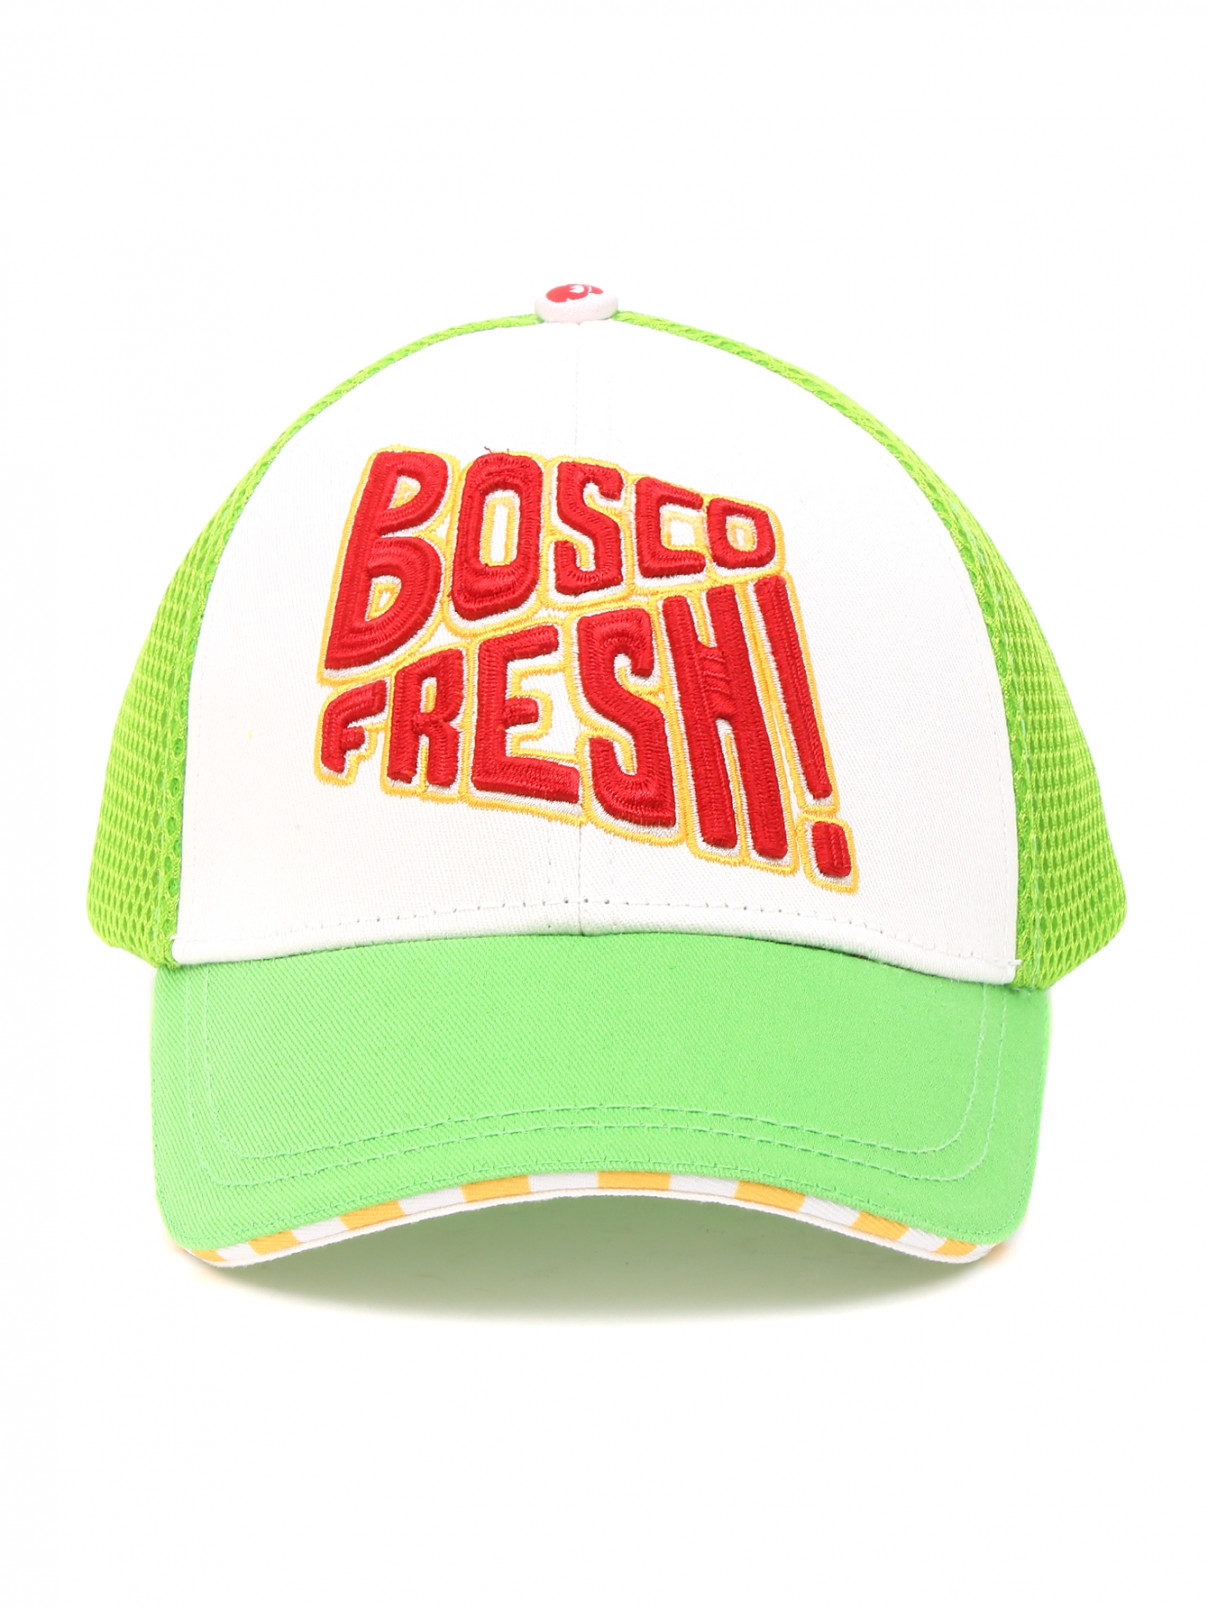 Бейсболка из хлопка с декоративной вышивкой BOSCO  –  Общий вид  – Цвет:  Зеленый